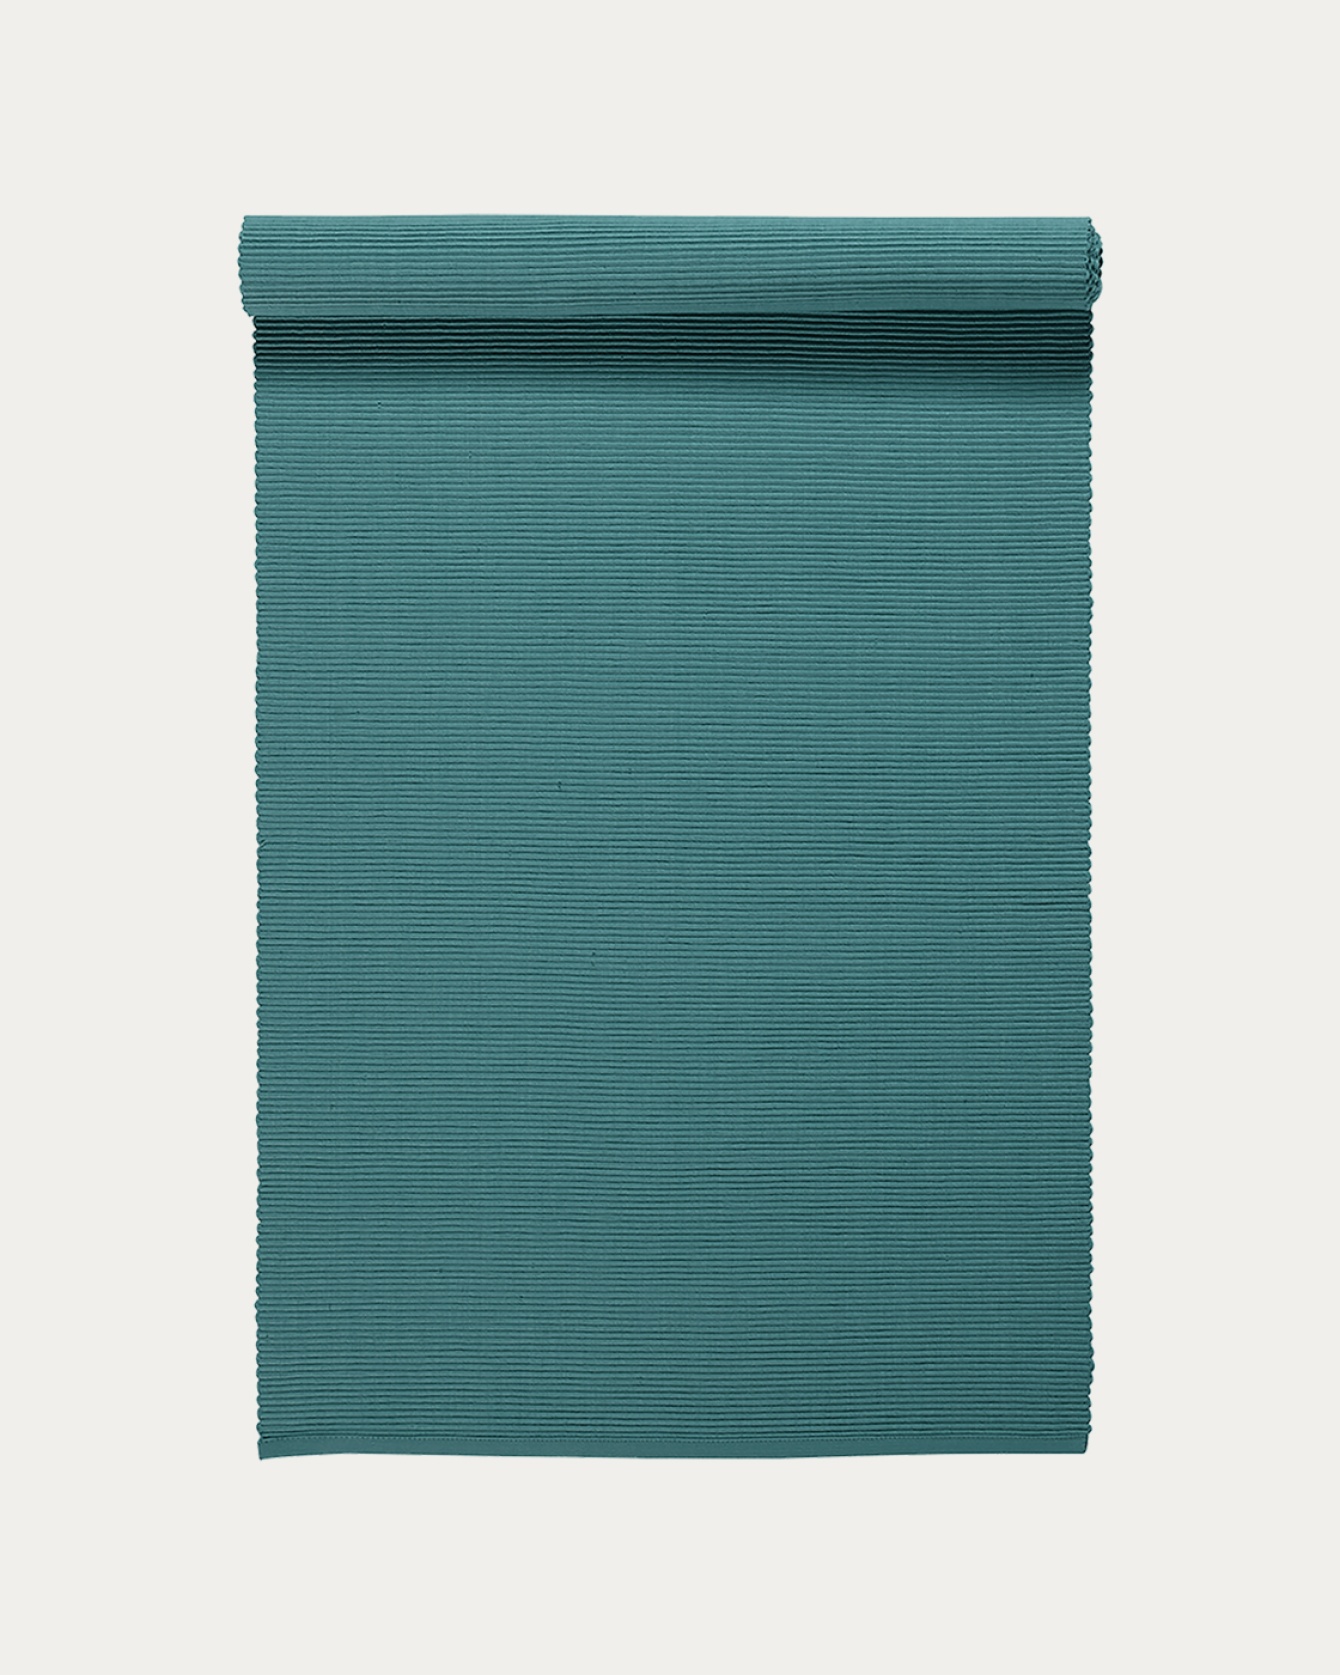 Image du produit chemin de table UNI gris foncé turquoise en coton doux de qualité côtelée de LINUM DESIGN. Taille 45 x 150 cm.